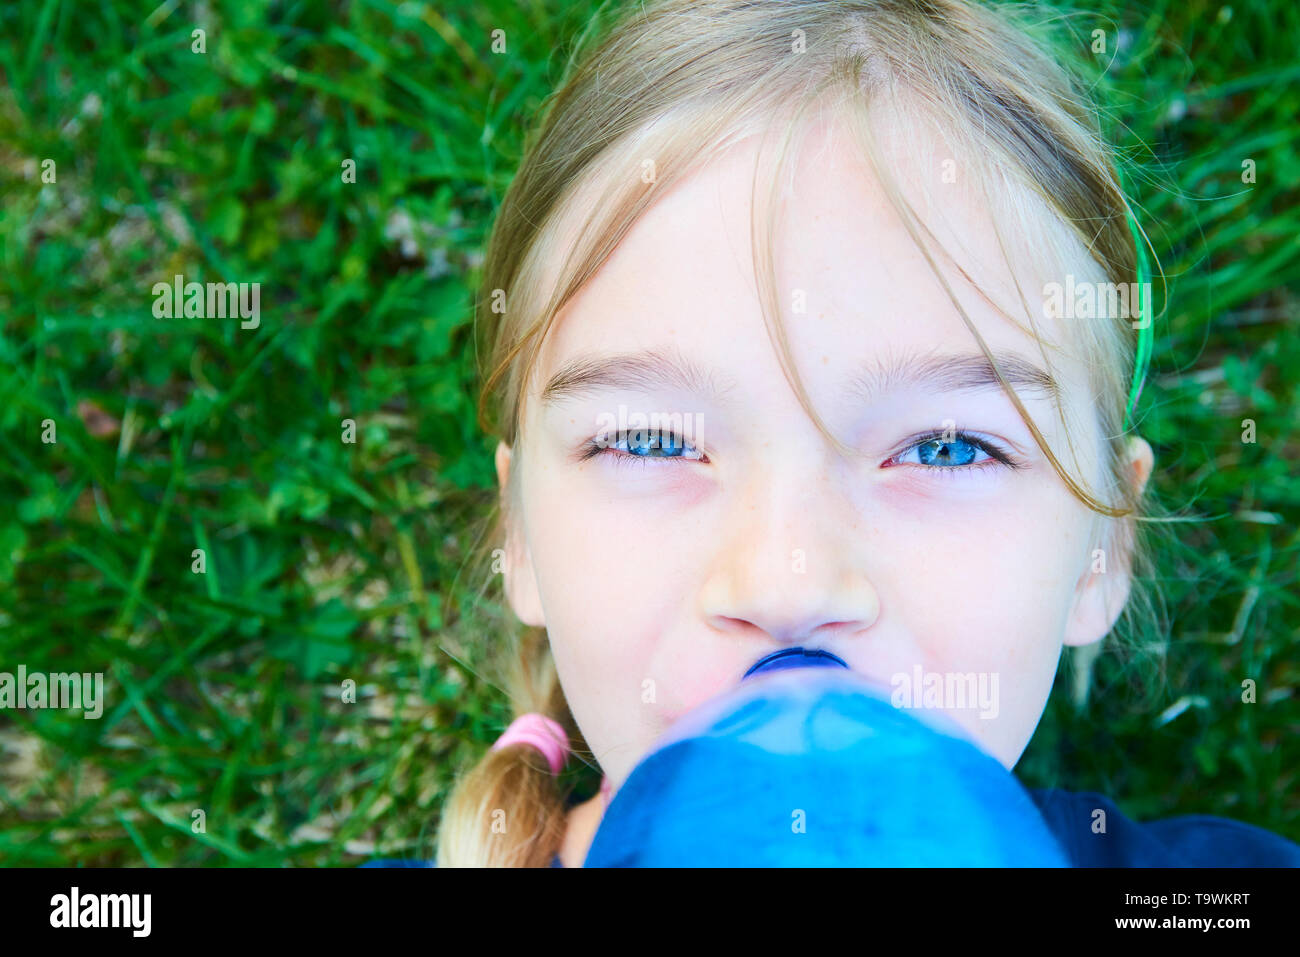 Close up portrait of girl adorable aux yeux bleus l'eau potable de la bouteille bleue en plastique avec fond de verdure Banque D'Images